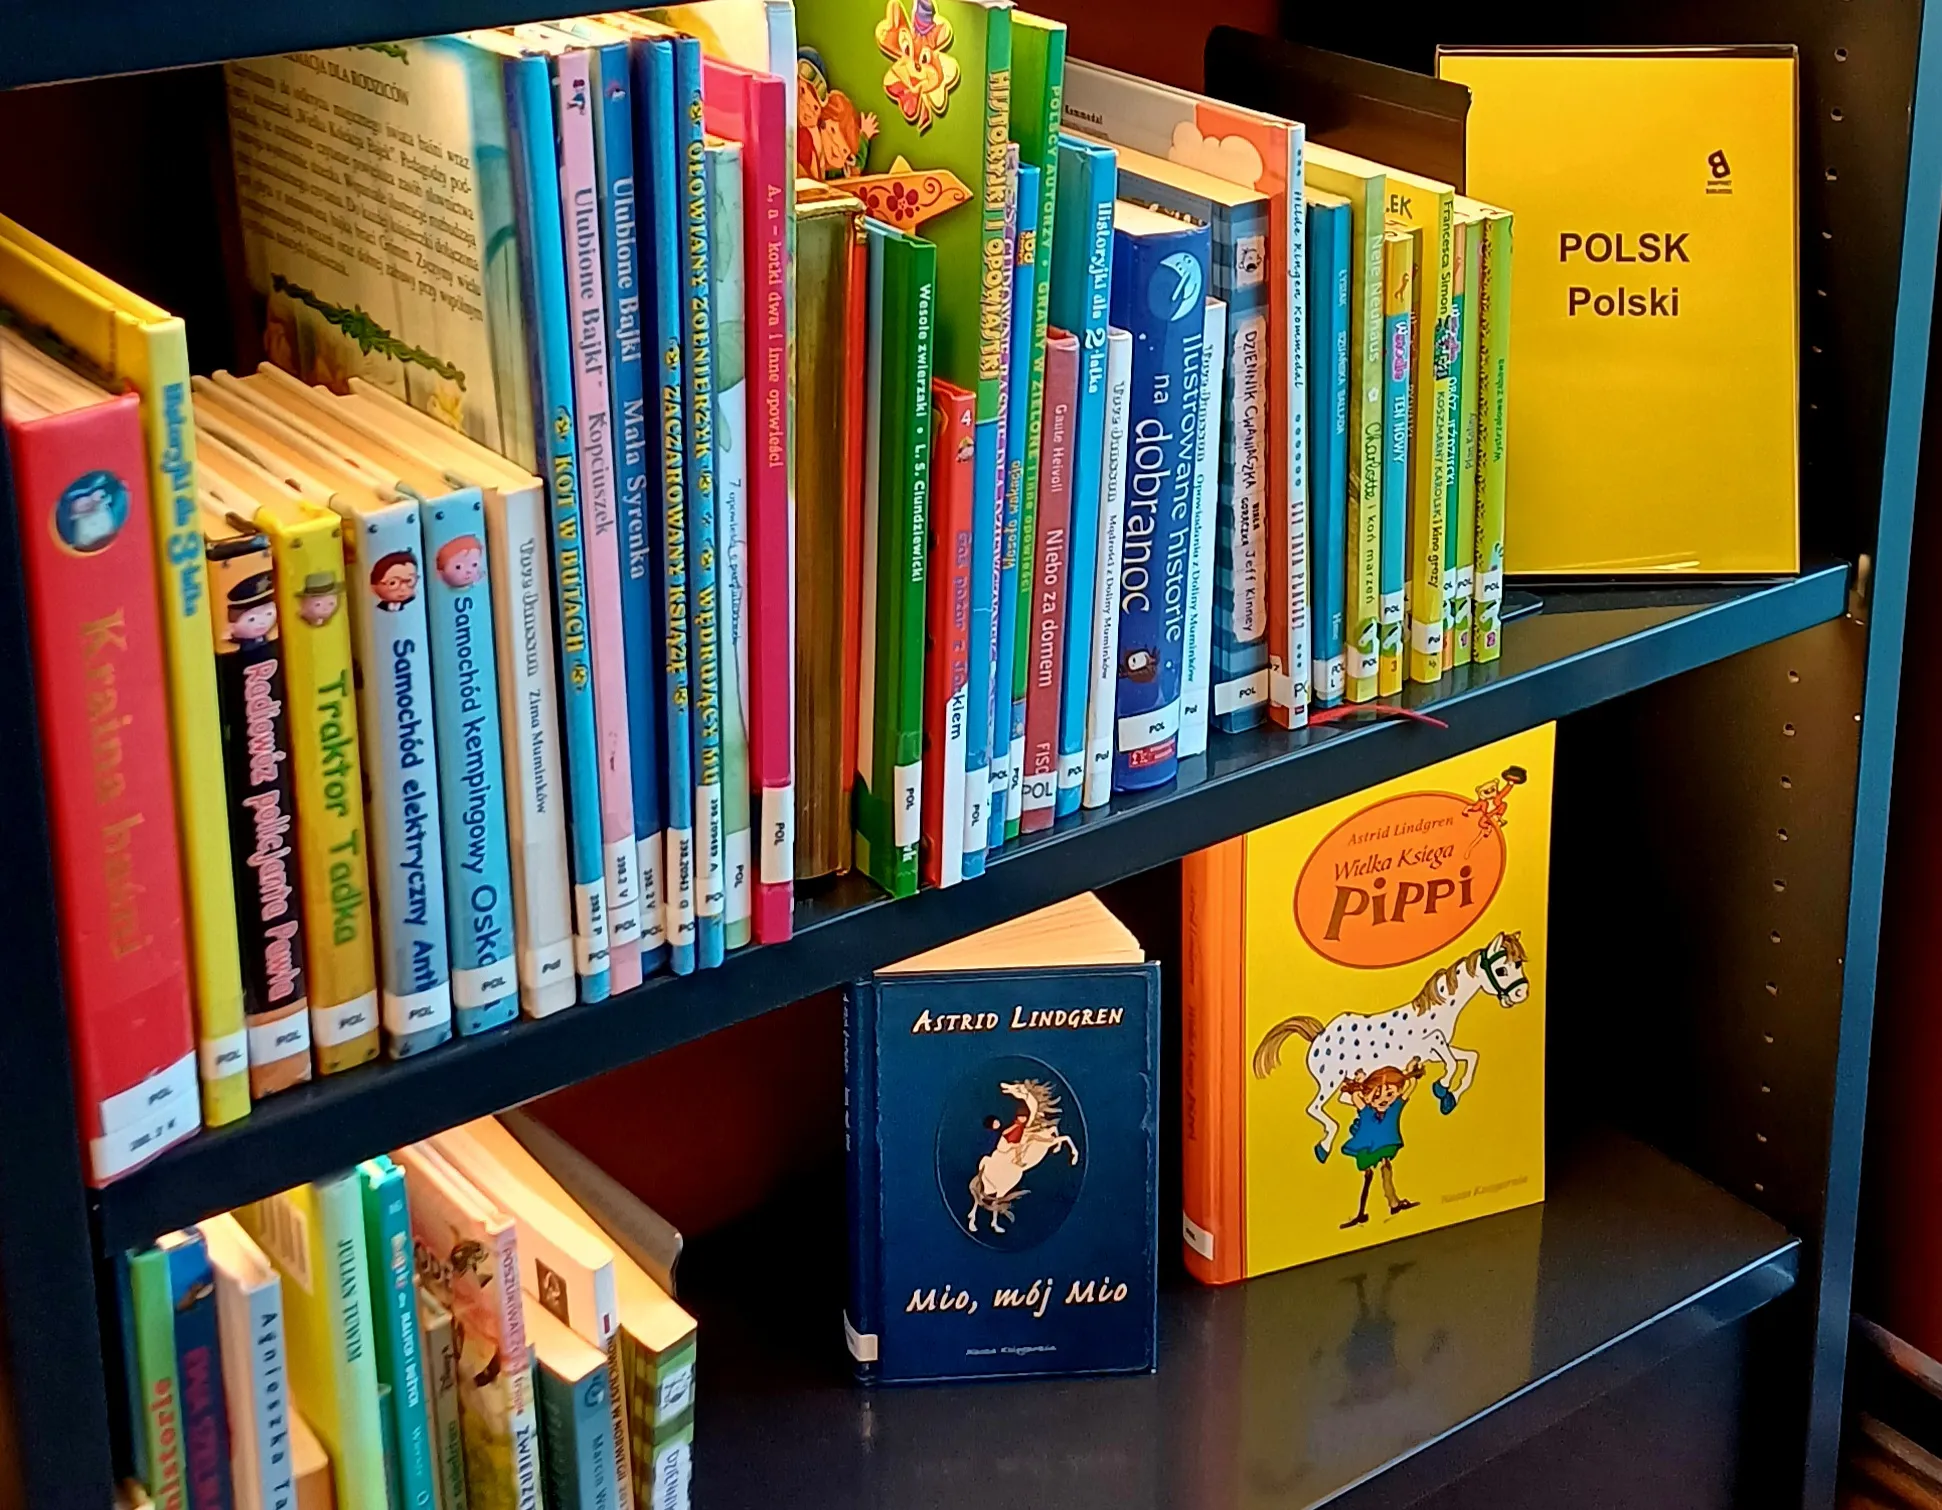 Książki po polsku w norweskiej bibliotece: Biblioteka wielojęzyczna dostępna dla wszystkich